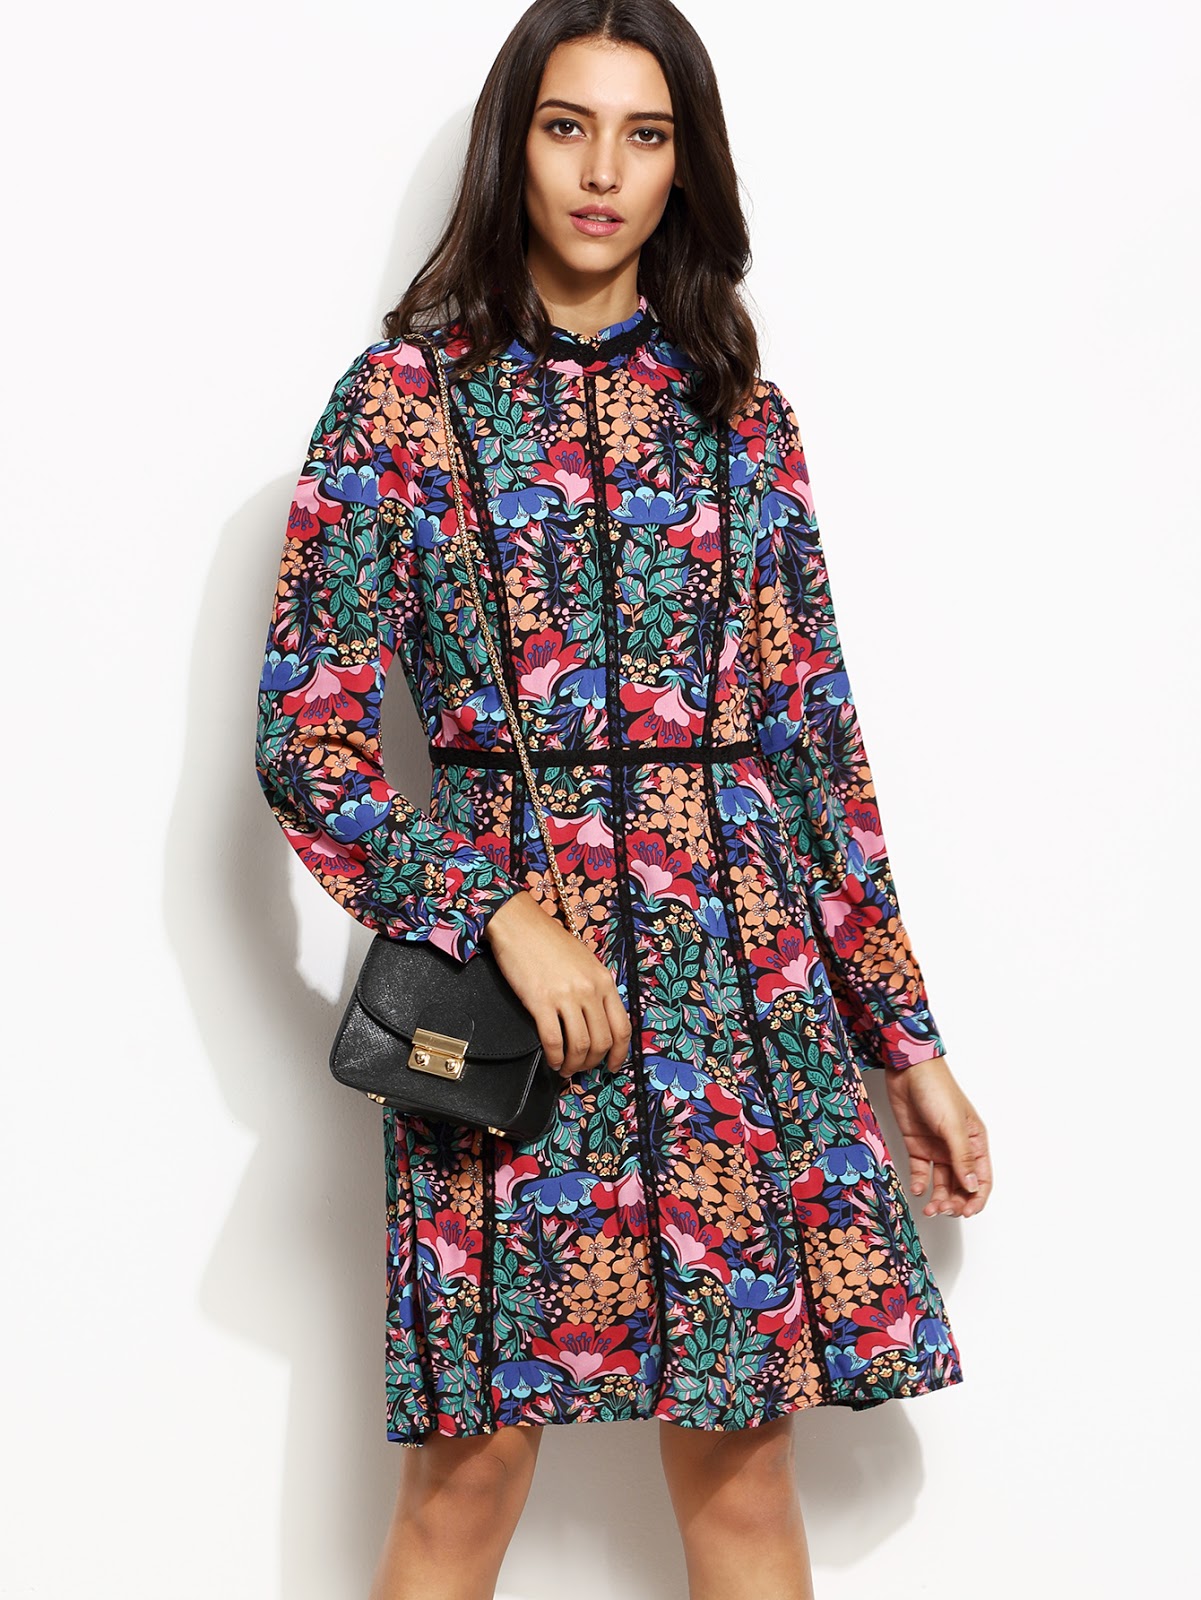  Multicolor Floral Print Lace Trim Long Sleeve Dress